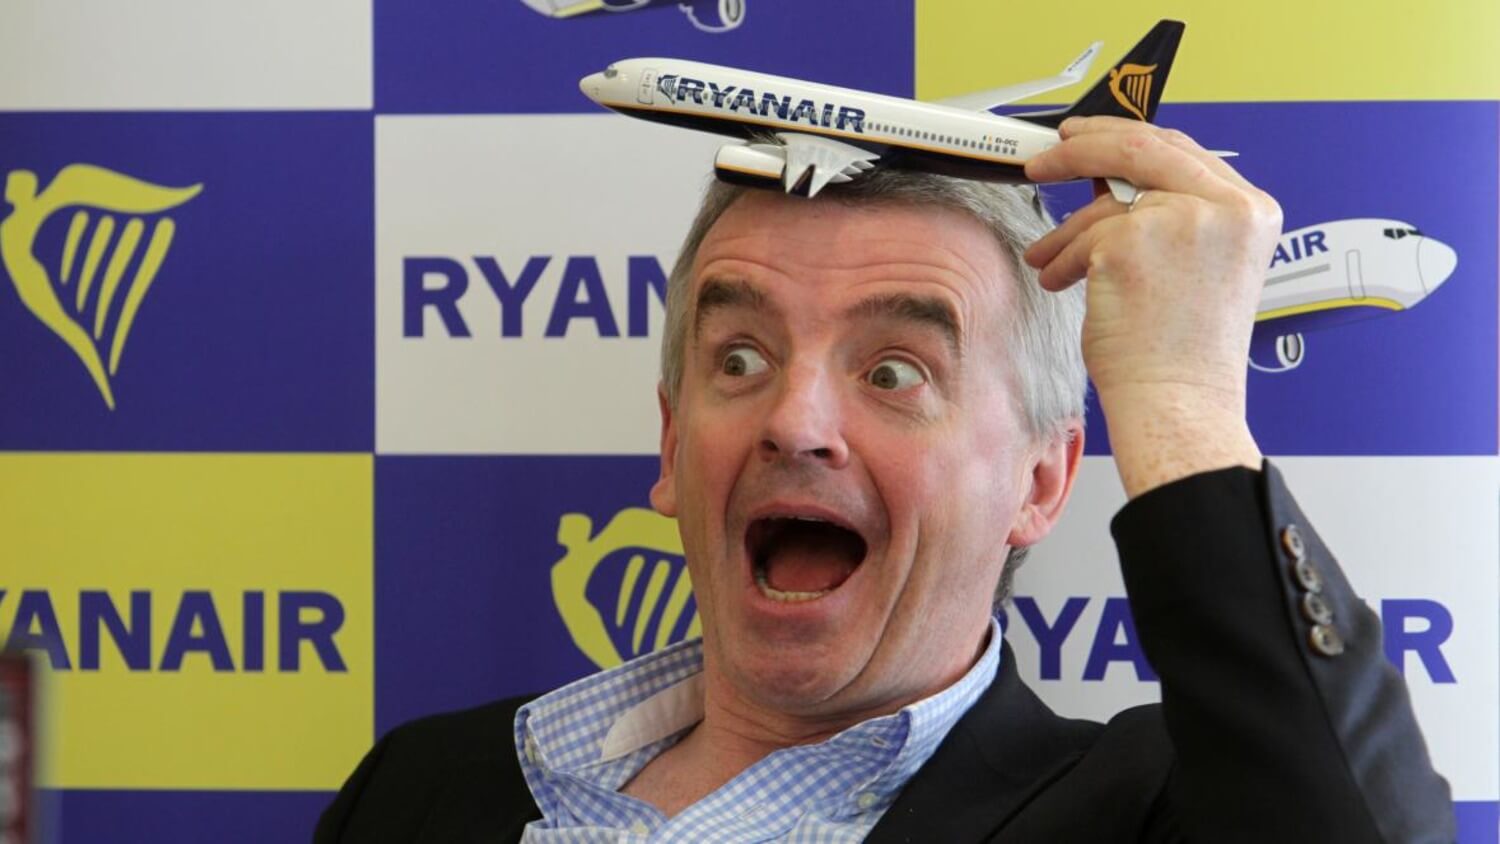 КРИПТОЖМЫХ / Критика Биткоина от руководителя Ryanair, причины вывода BTC с бирж и будущее Эфириума. Руководитель Ryanair назвал Биткоин финансовой пирамидой. В чем причина его недовольства? Фото.